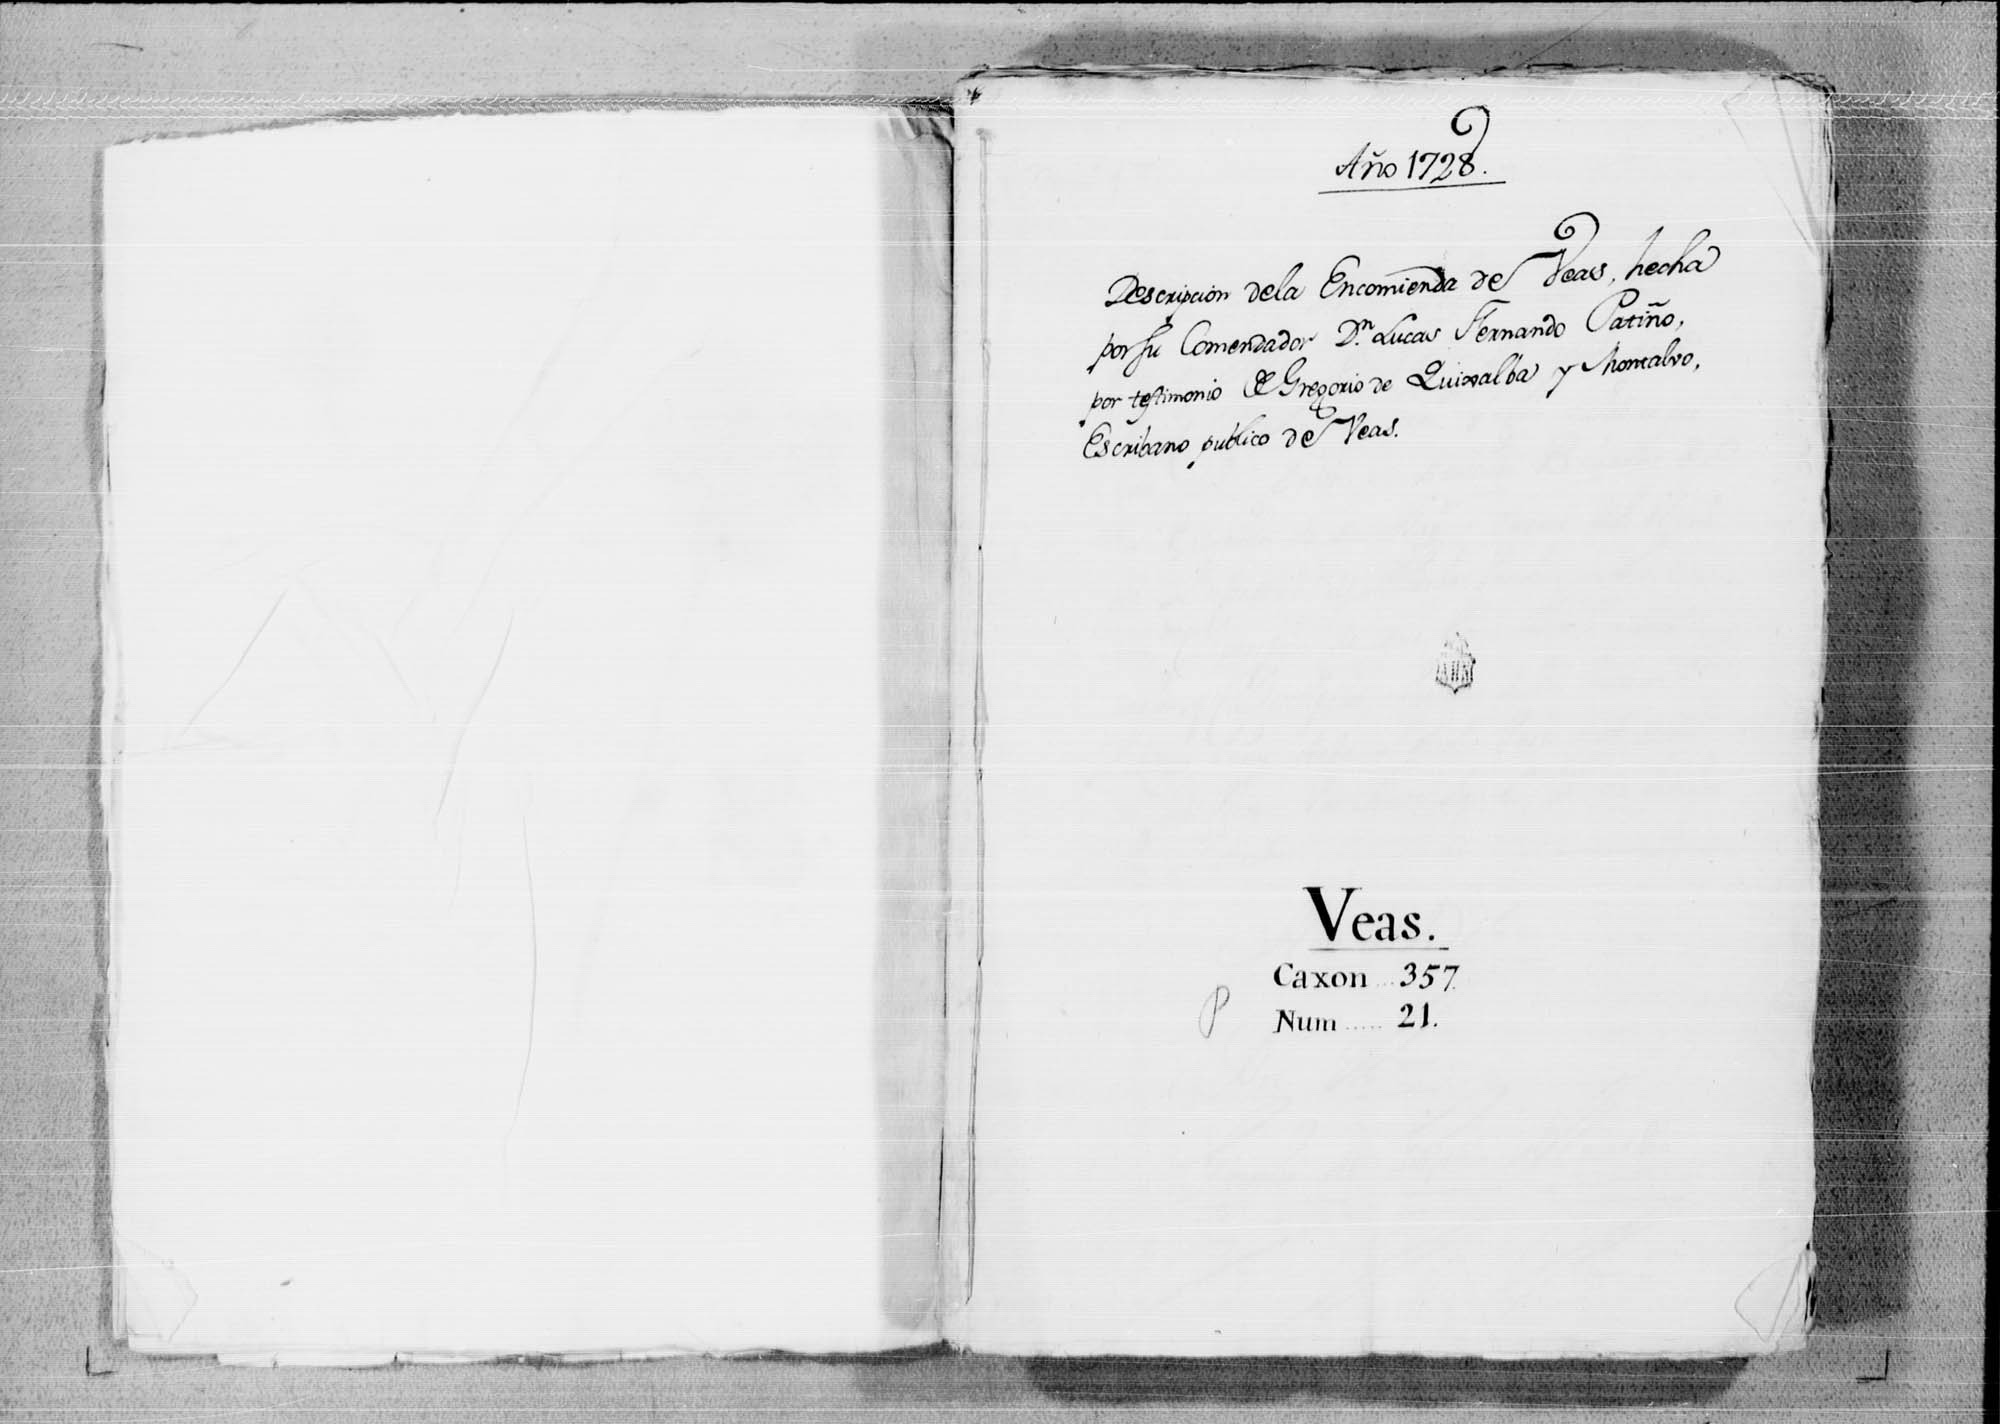 Descripción de la encomienda de Beas de Segura, realizada por orden de su comendador Lucas Fernández Patiño.